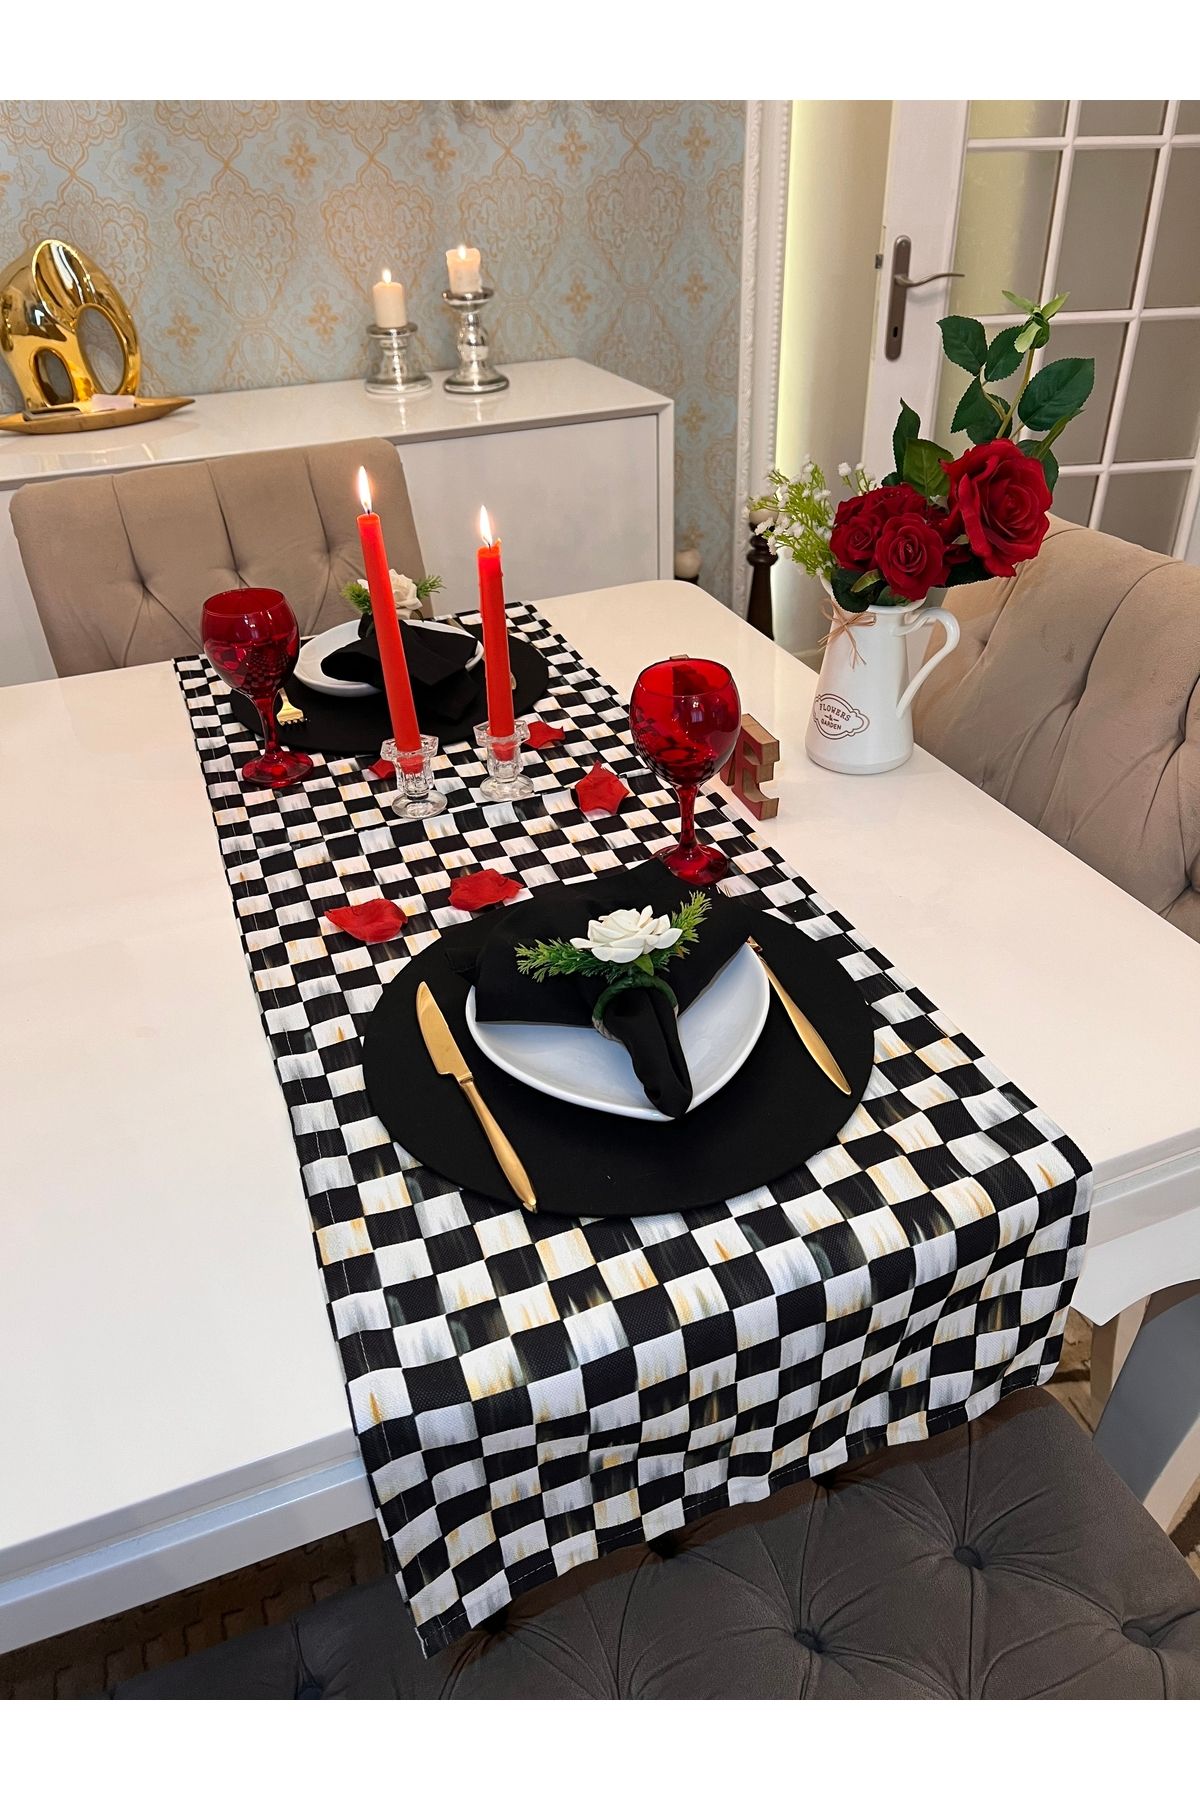 Ayd Home 2 kişilik siyah damalı sevgililer günü masası romantik 14 şubat sofra sunum ranır peçetelik